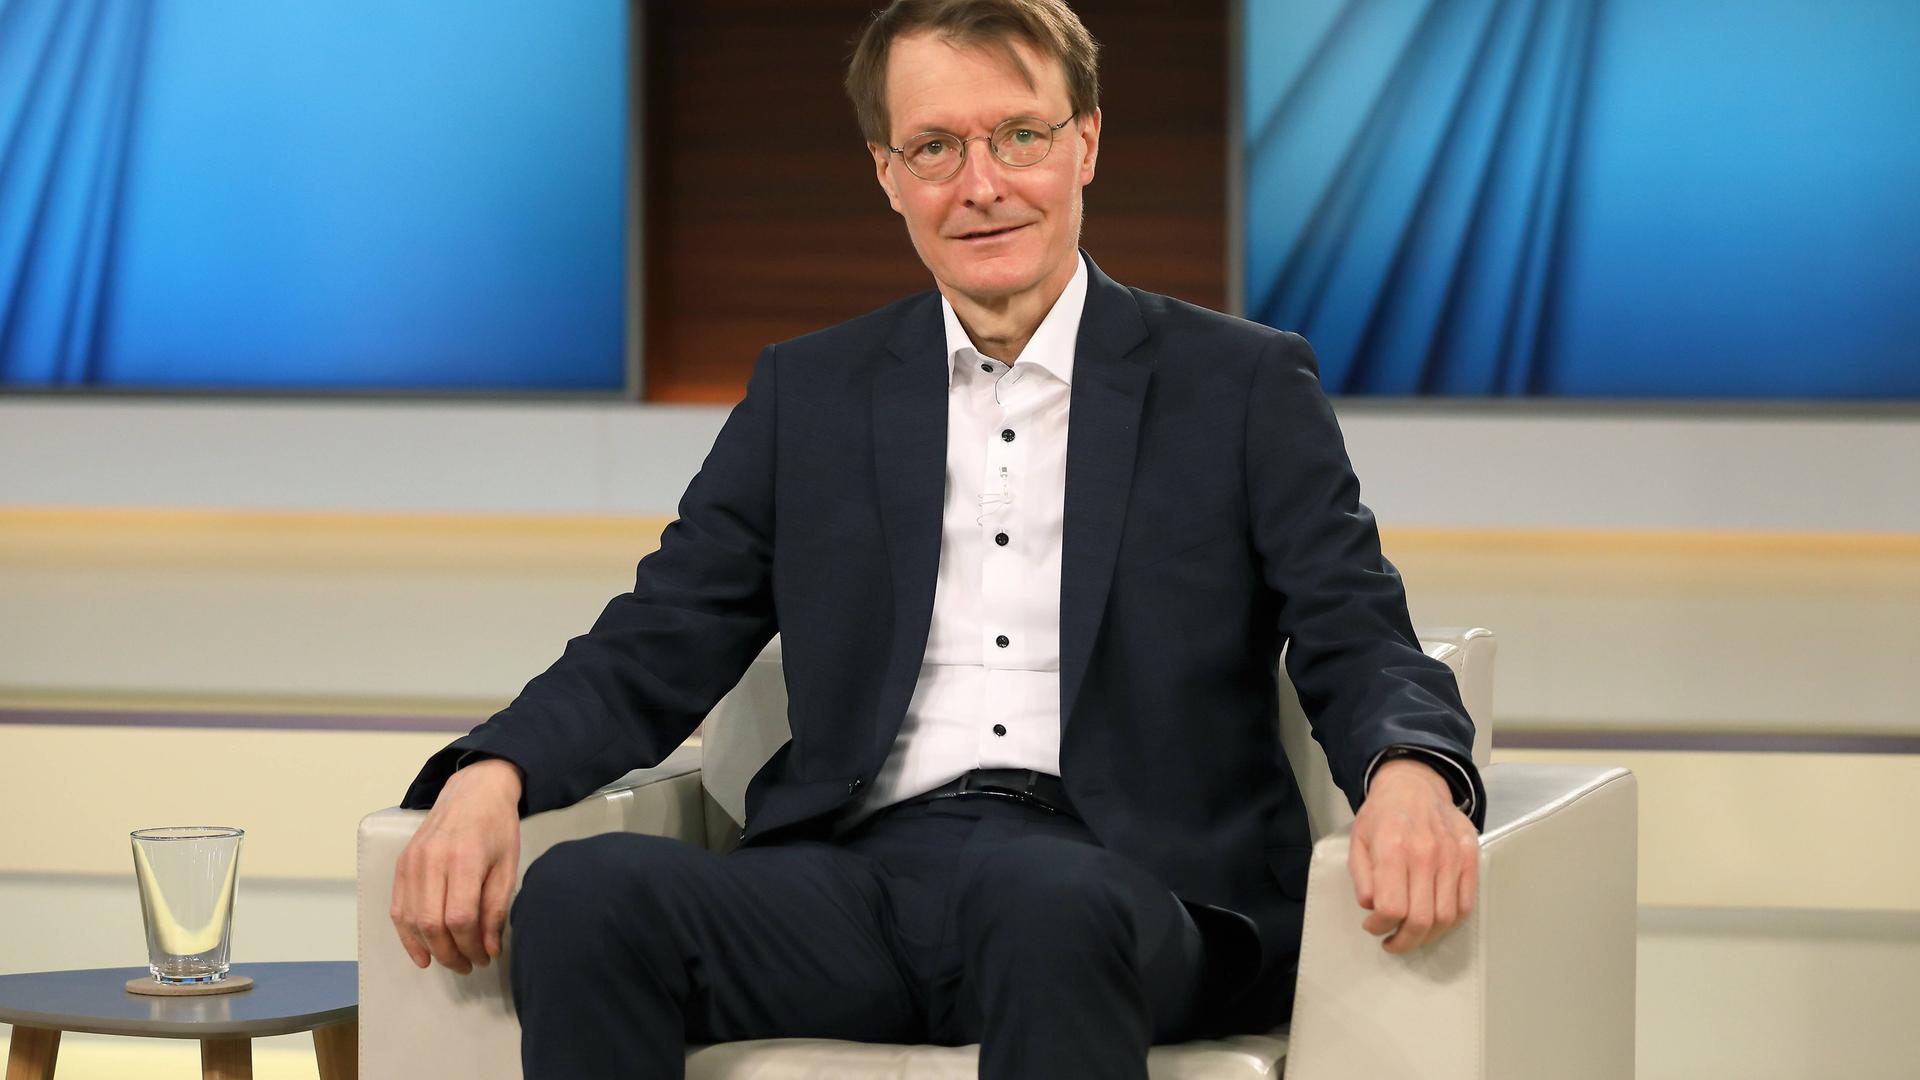 Dr. med. Karl Lauterbach in der ARD-Talkshow "Anne Will". 2020.